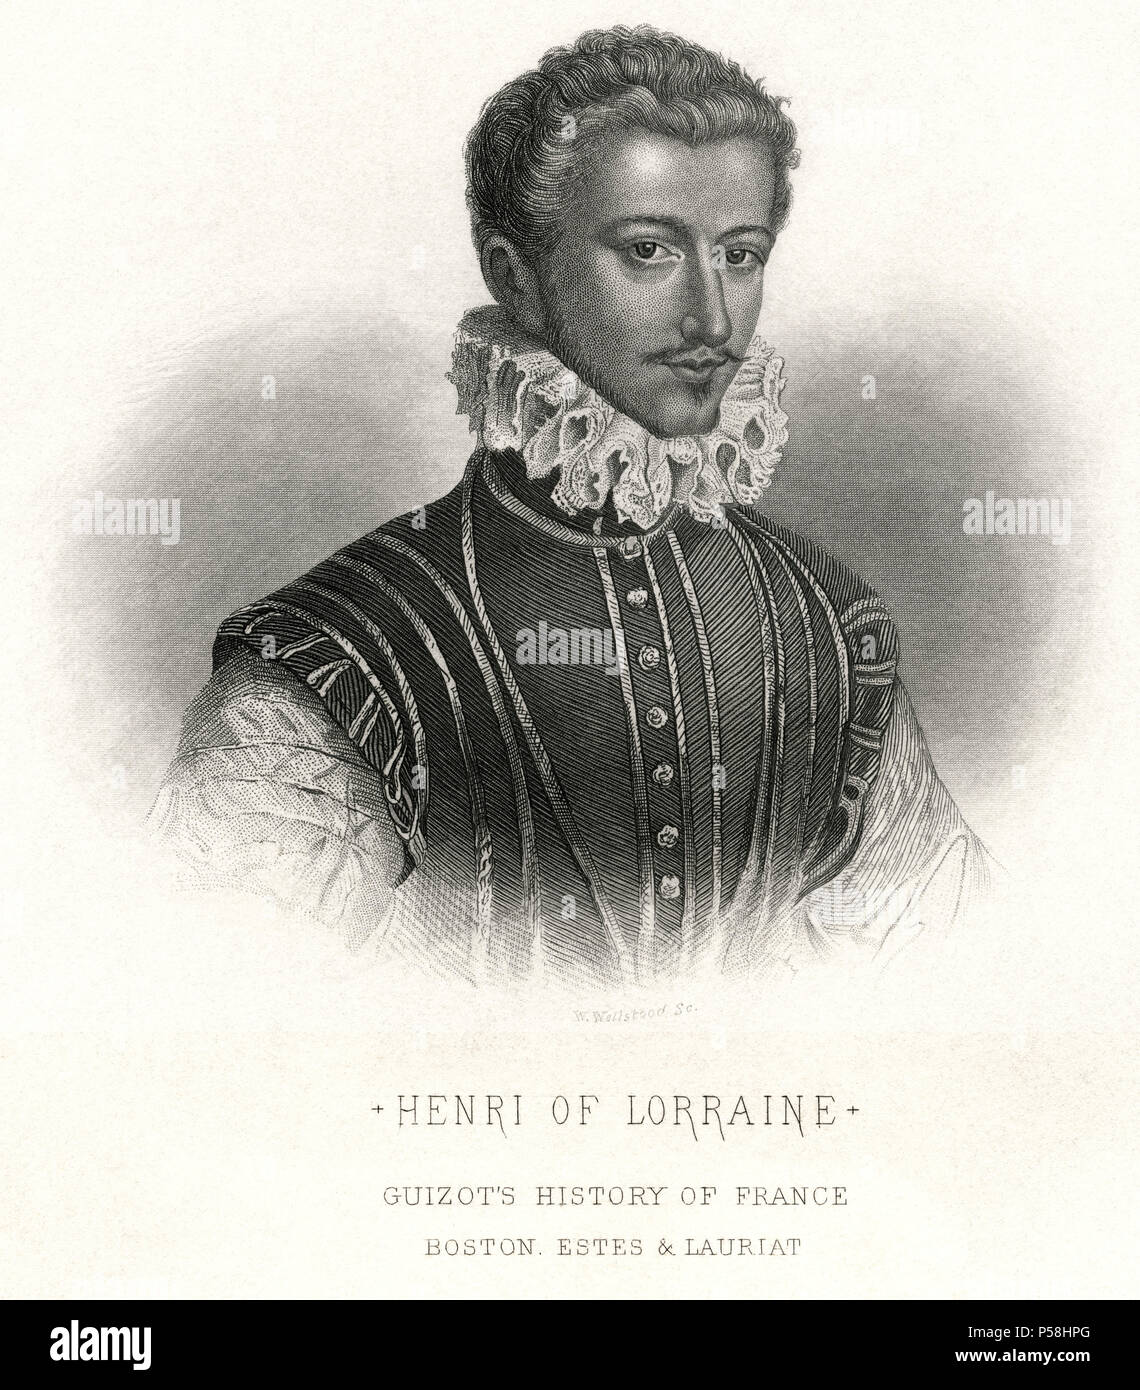 Henri de Lorraine, duc de Guise (1550-88), duc de Guise, fondateur de la ligue catholique pendant la ligue les guerres de religion, la mi-xixe siècle Gravure Banque D'Images